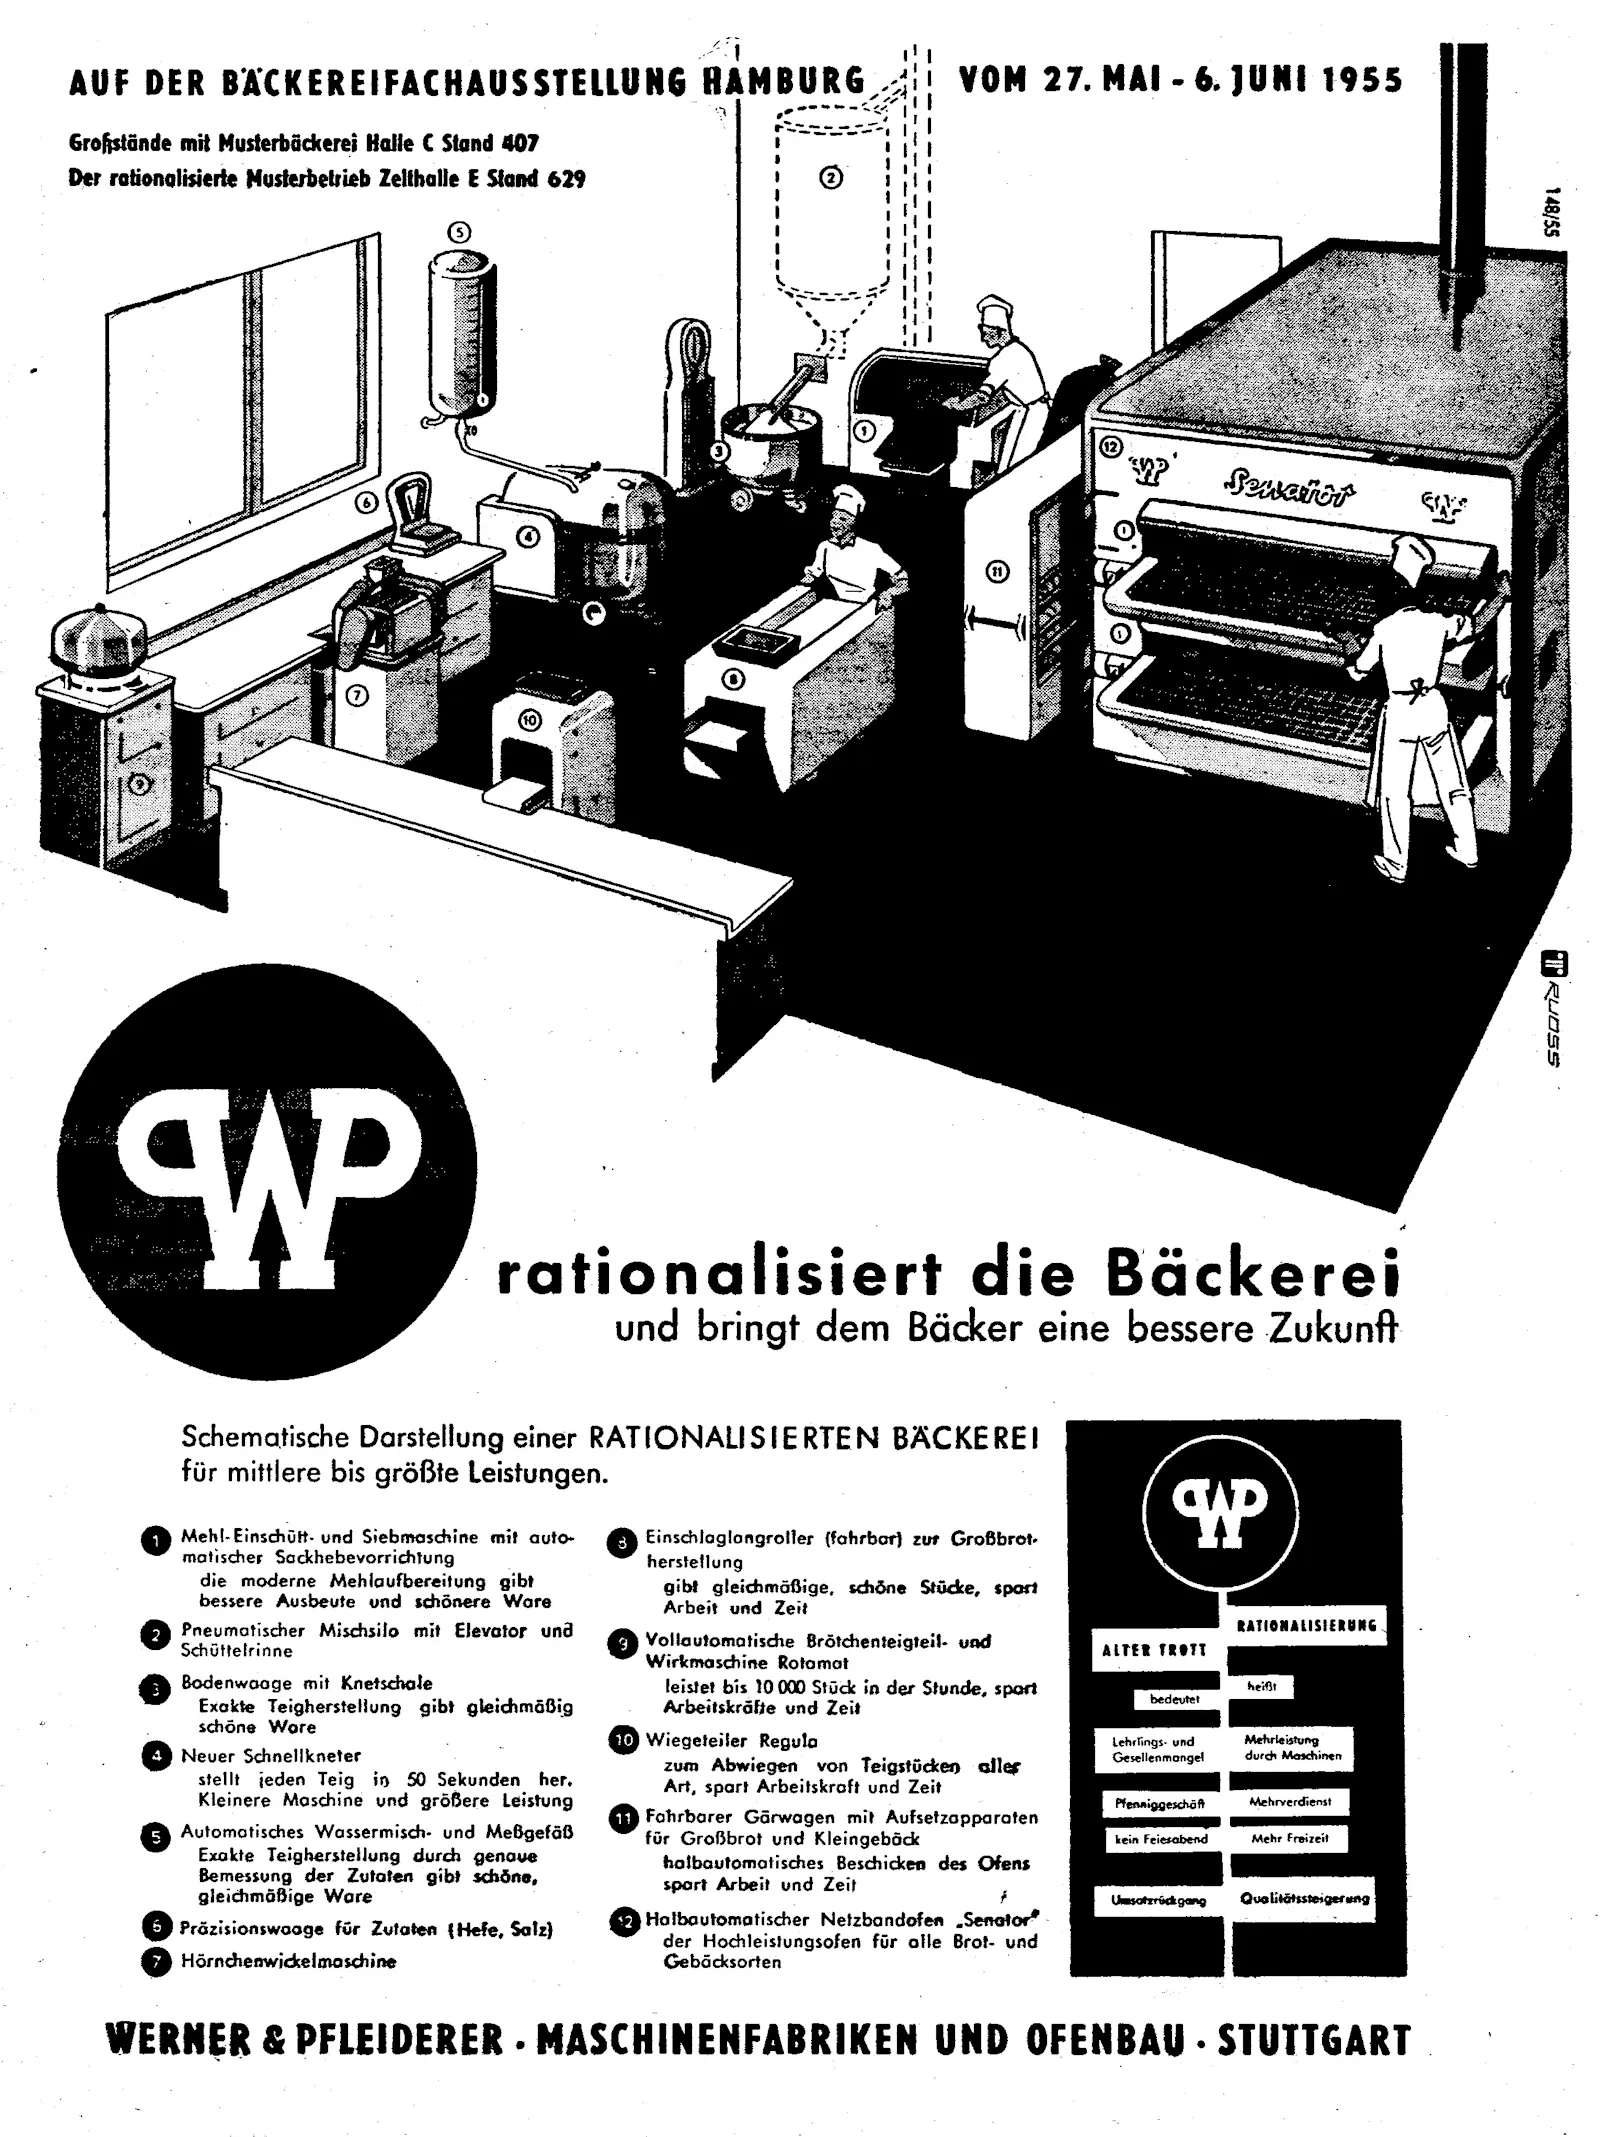 Anzeige des Maschinenherstellers Werner & Pfleiderer aus dem Jahr 1955 für eine rationelle Backstube.